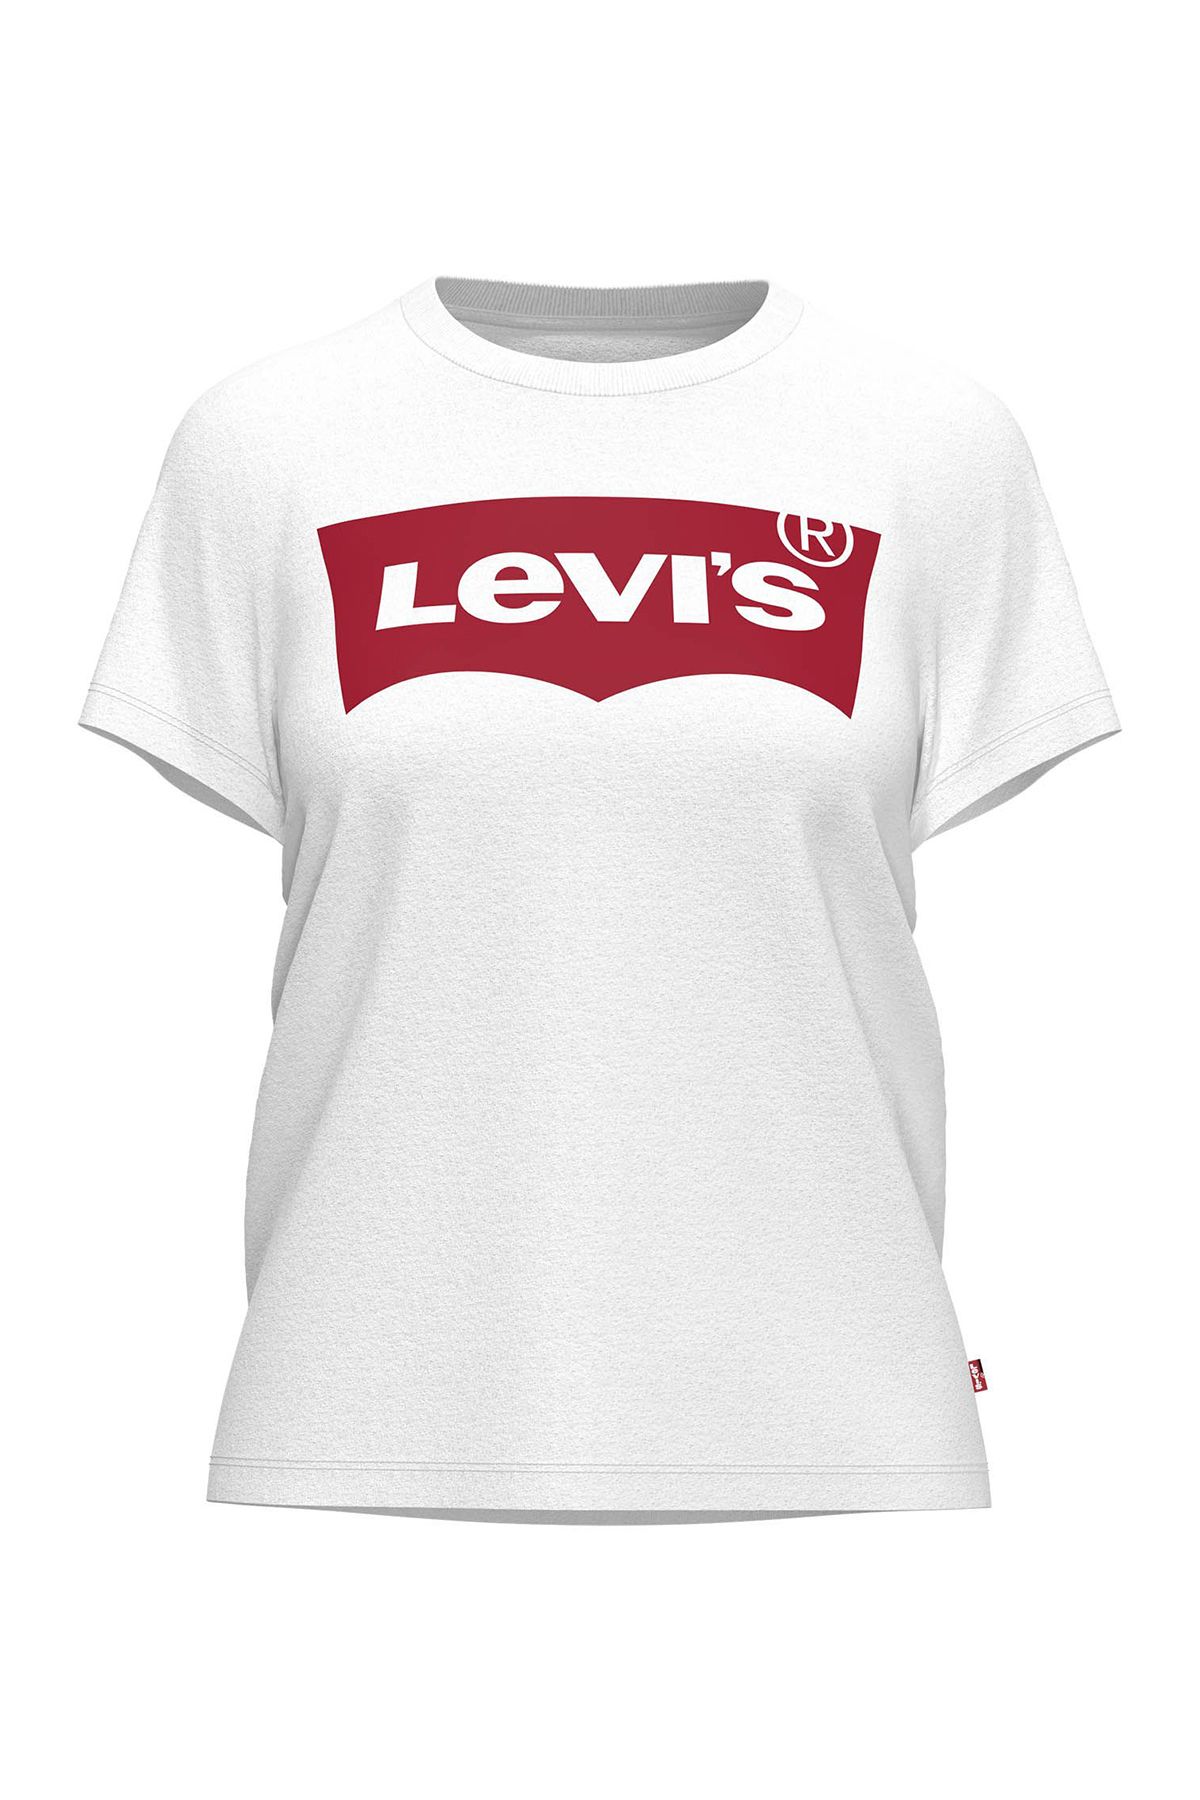 Levi's Kadın Beyaz T-shirt 17369-0053